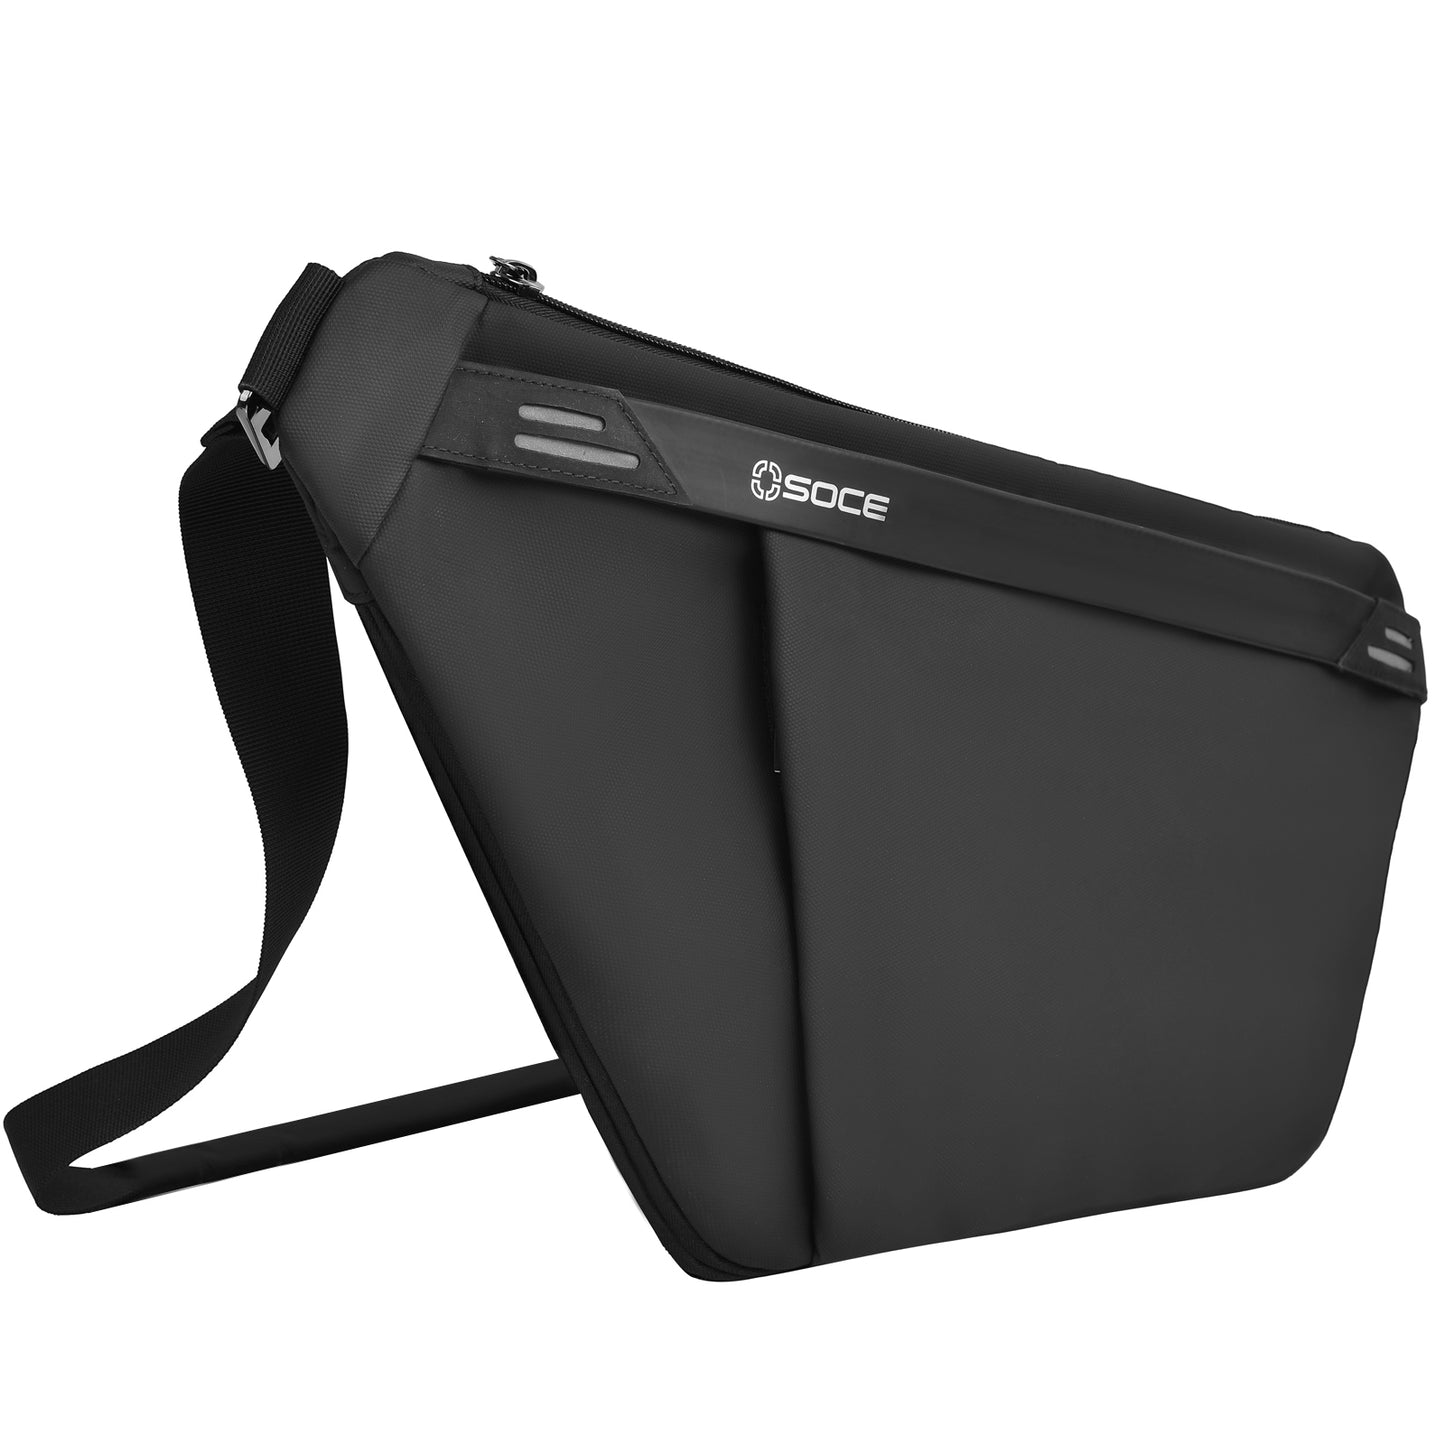 OSOCE B81-1  Leather Messenger Shoulder Sling Bag